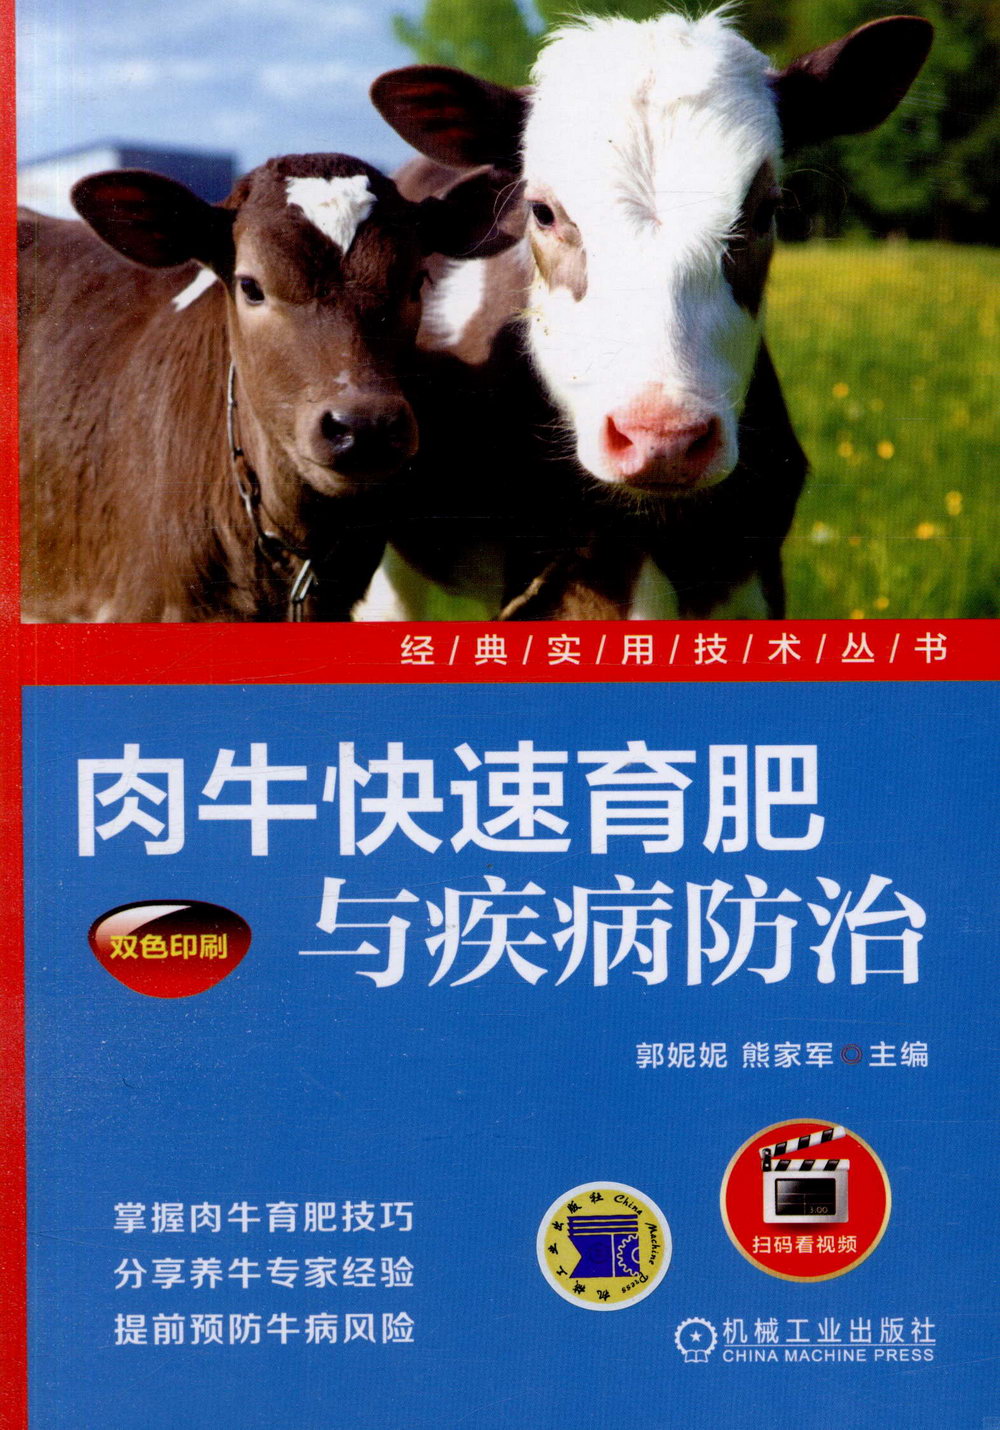 肉牛快速育肥與疾病防治